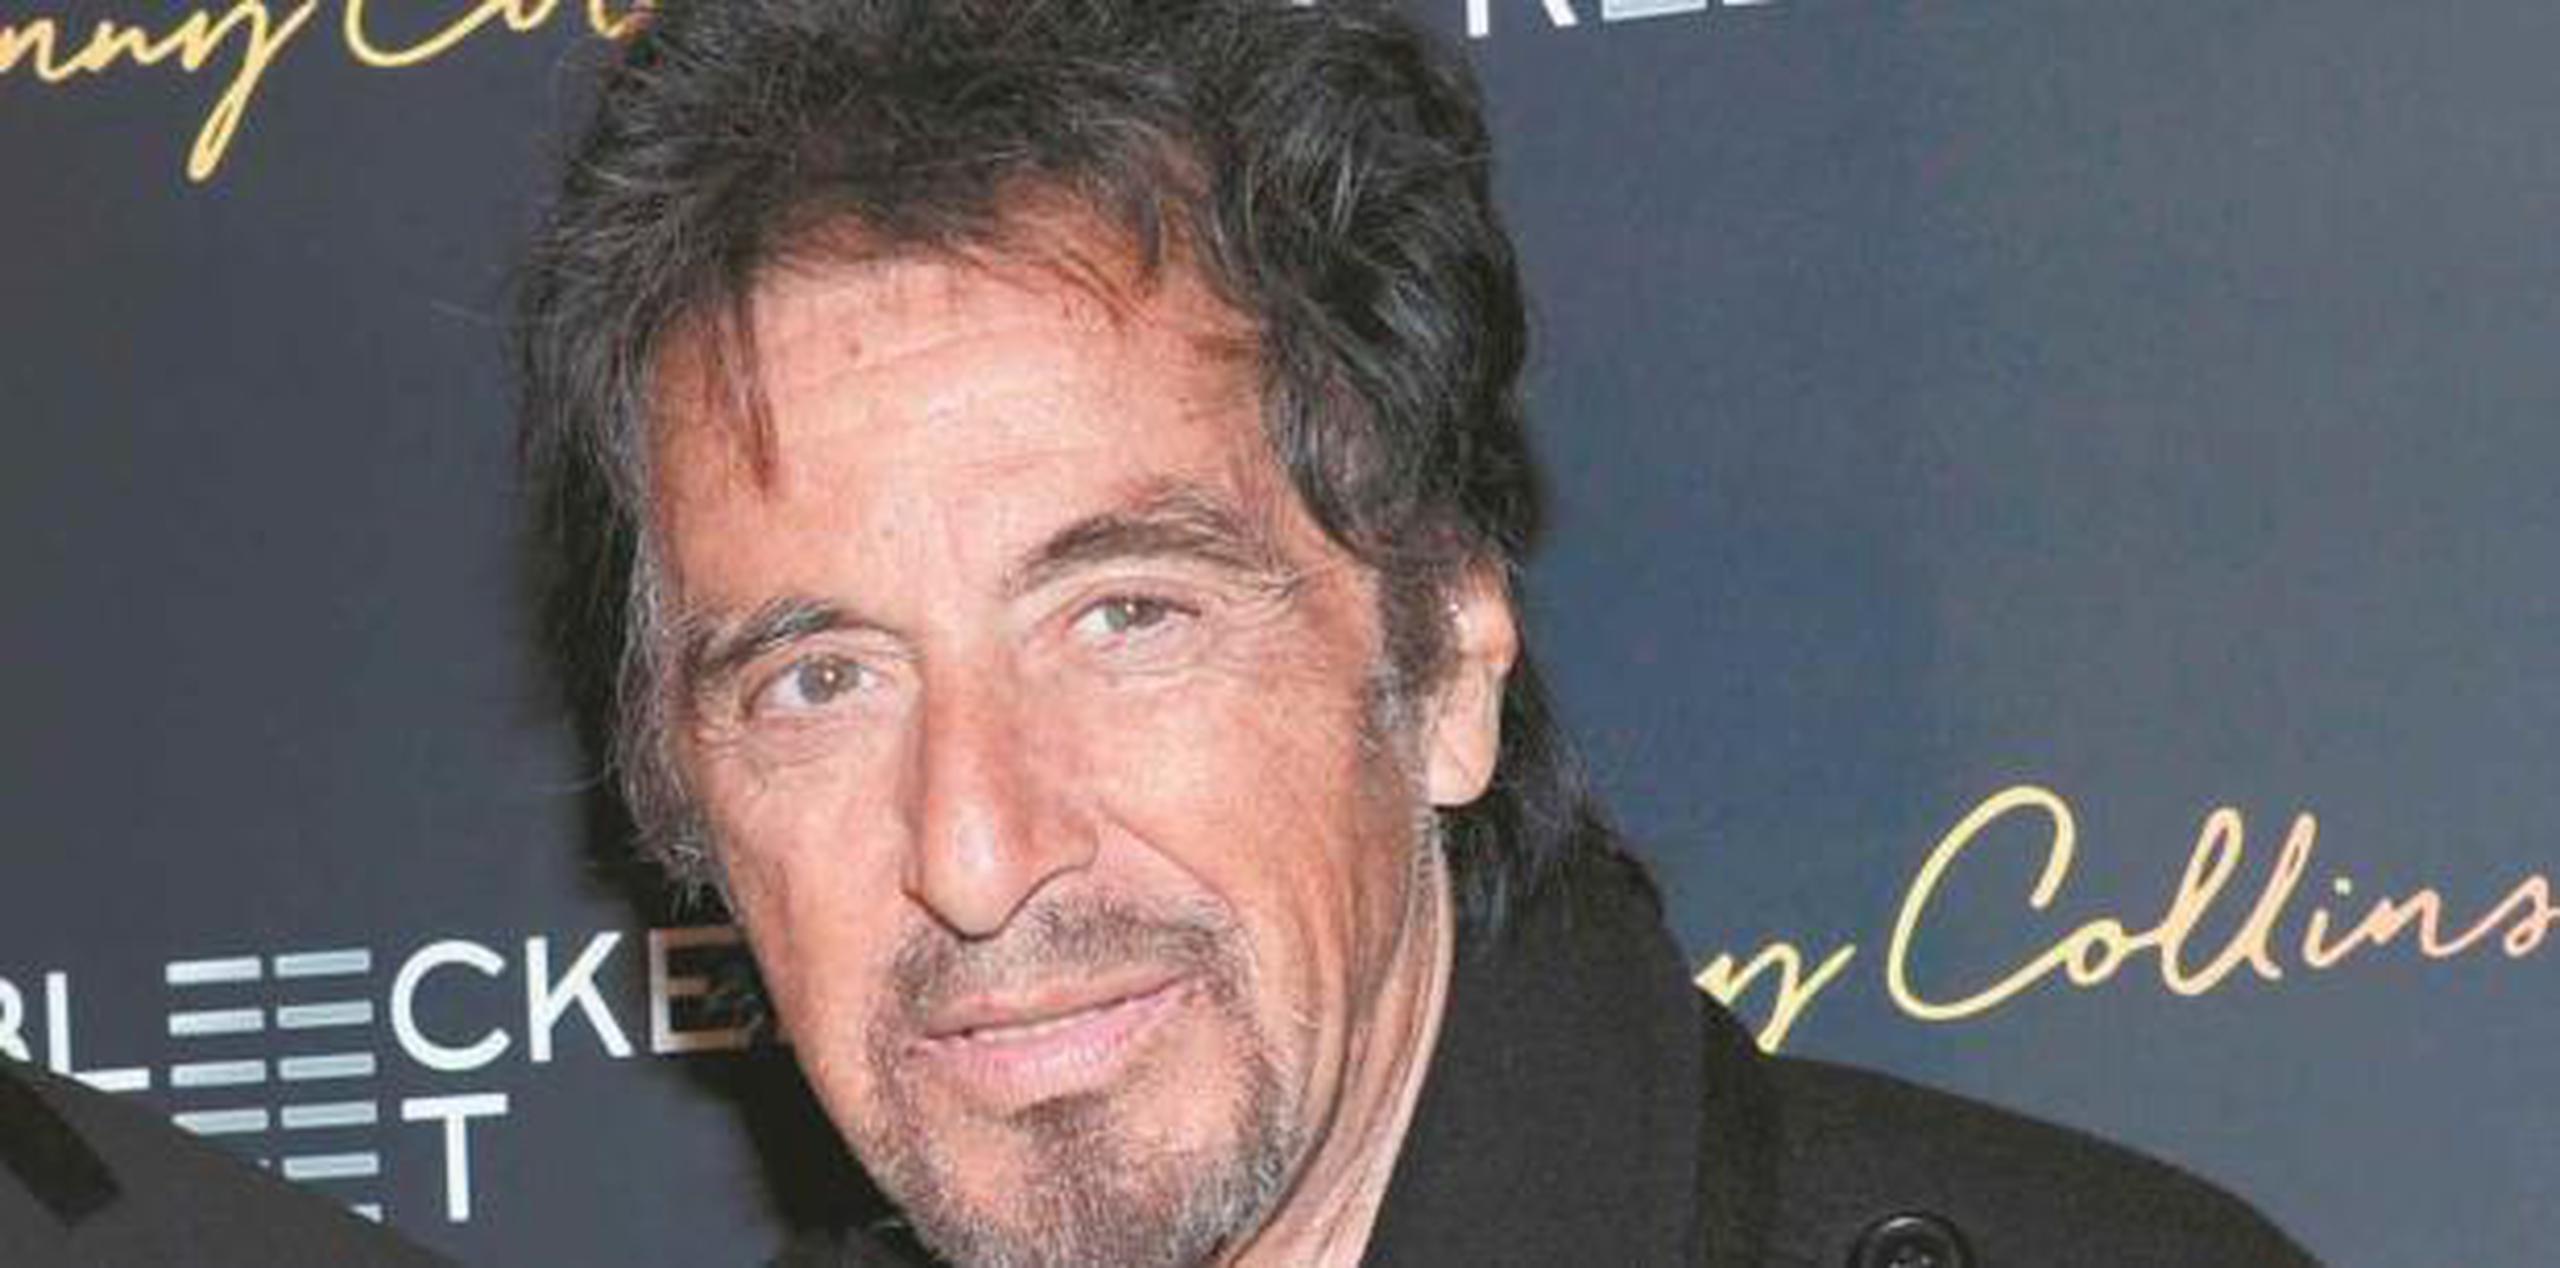 Por su papel en "The Irishman", Pacino ha recibido nominaciones a los Globos de Oro, Critics' Choice Awards, SAG Awards y se espera que sea nominado a los Oscar.  (archivo)